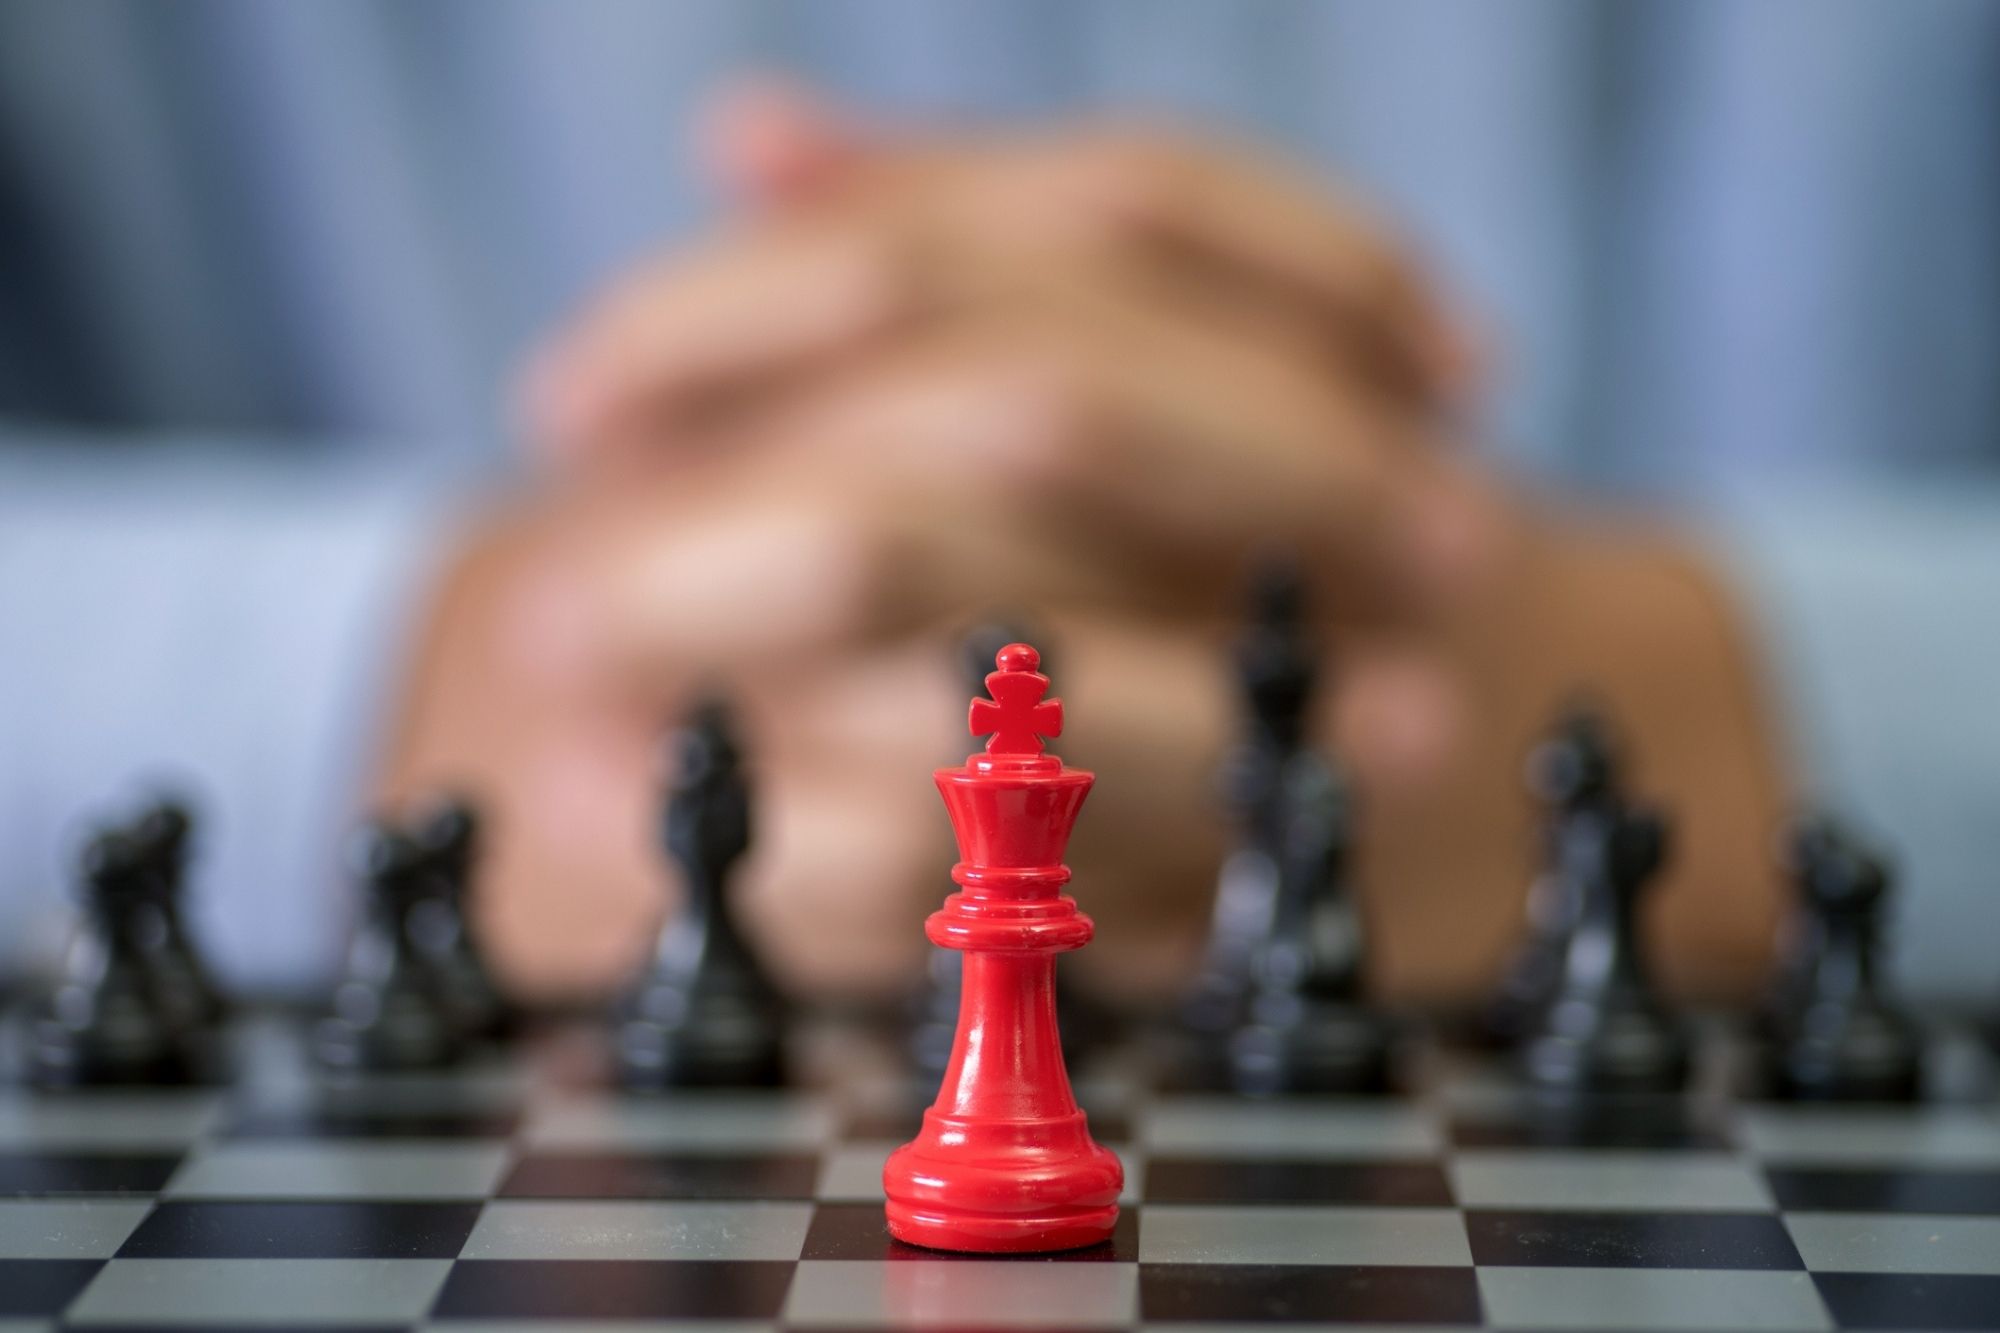 Conheça os benefícios do xadrez para crianças